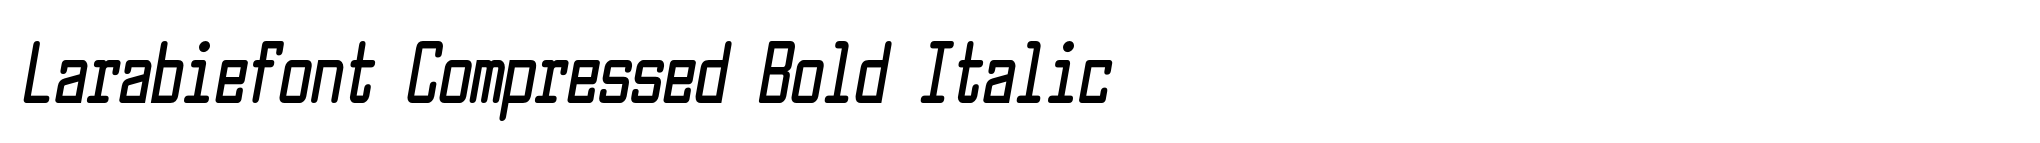 Larabiefont Compressed Bold Italic image